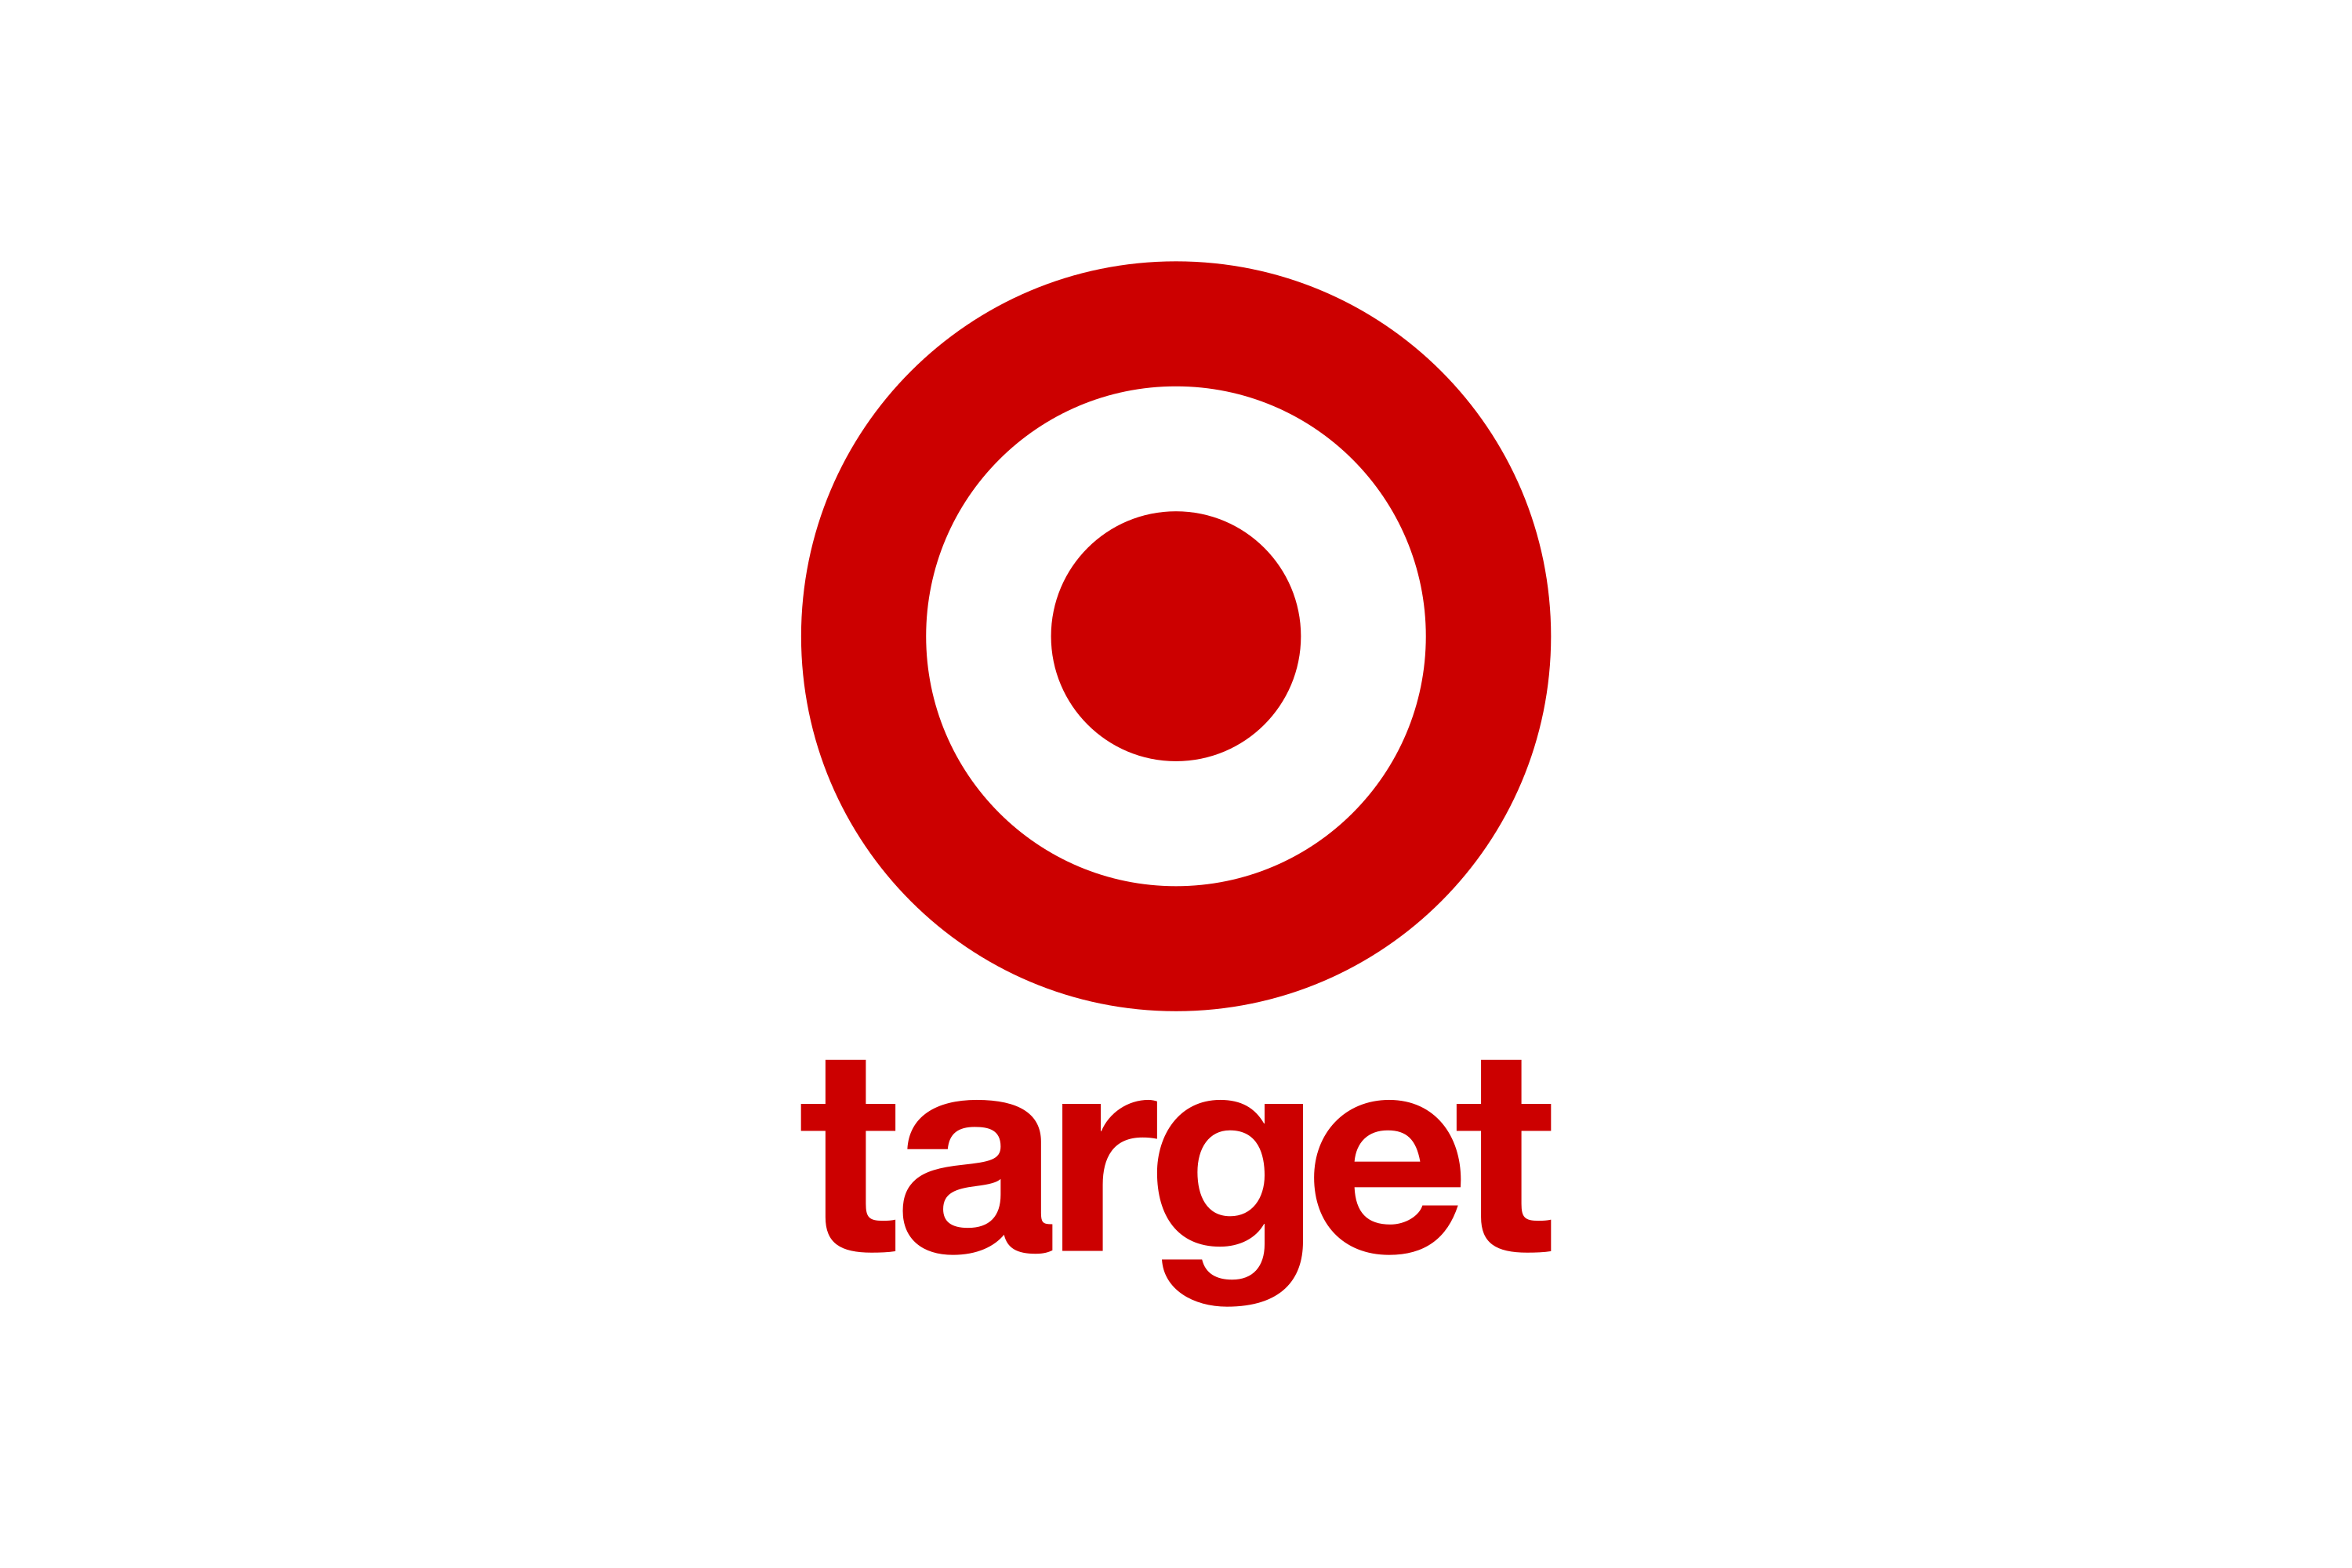 Download Target Logo in SVG Vector or PNG File Format 